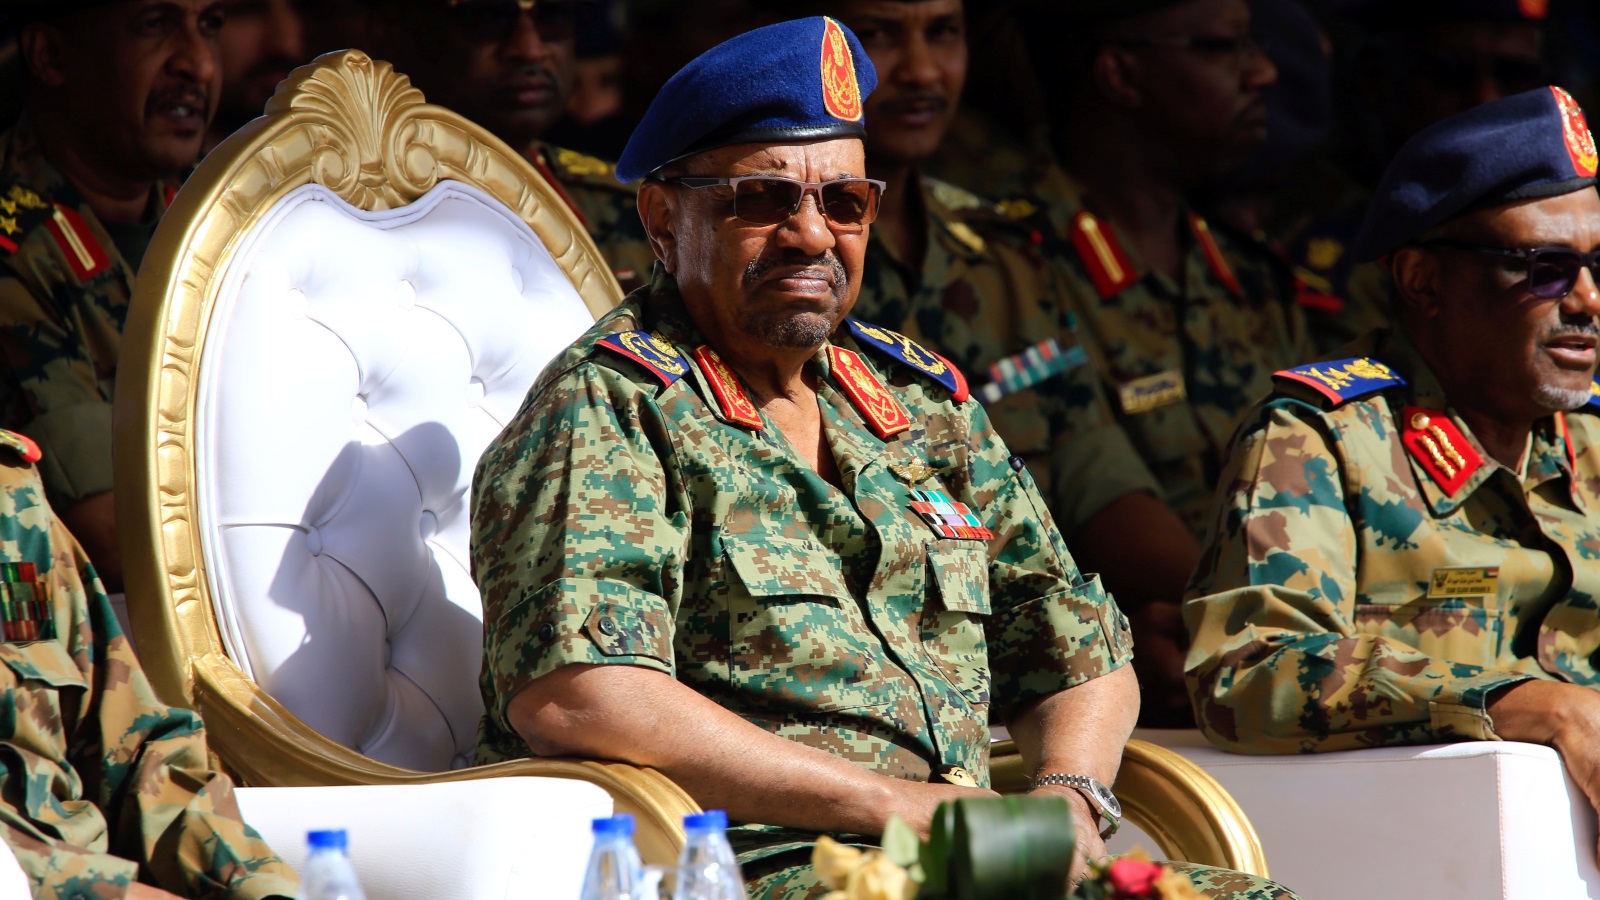 الرئيس السوداني عمر البشير خلال العرض العسكري المشترك بين السودان والسعودية، أبريل 2017 (رويترز)